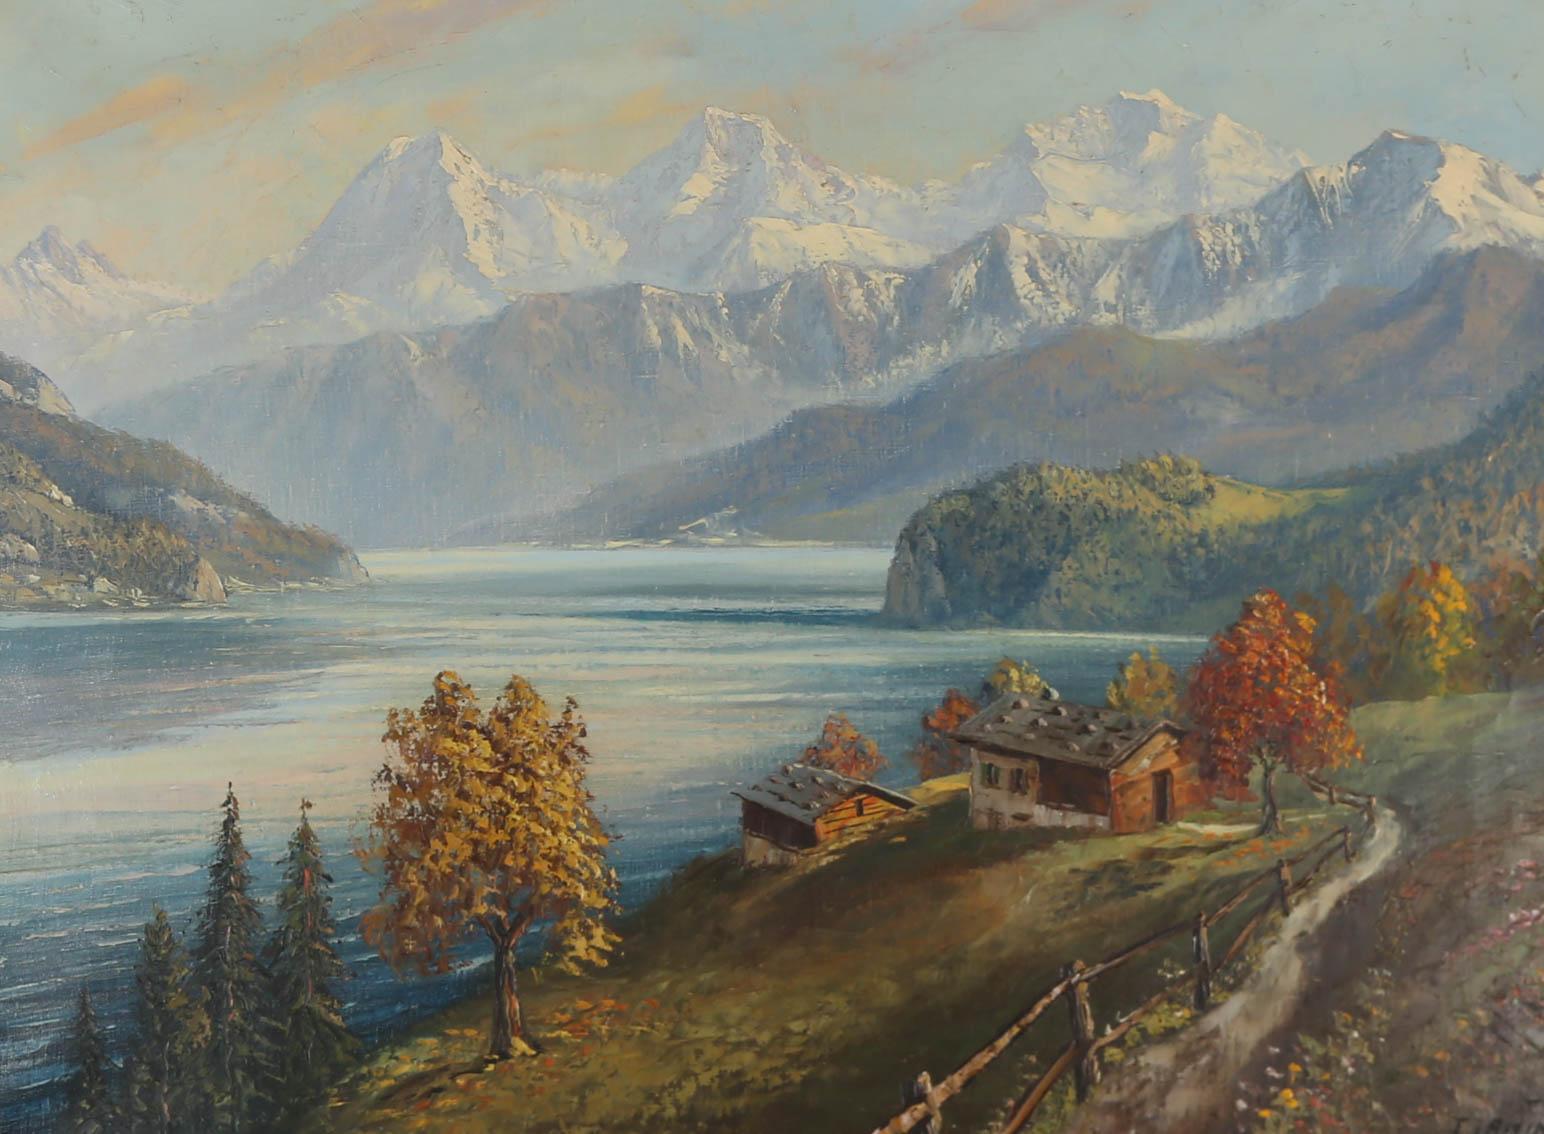 Eine beachtlich große Ölstudie einer dramatischen Schweizer Landschaft, gemalt mit atemberaubenden Ausblicken auf ein Flusstal und weiß gekappte Berge. Das Öl wurde vom Künstler in der rechten unteren Ecke signiert. Gut präsentiert in einem großen